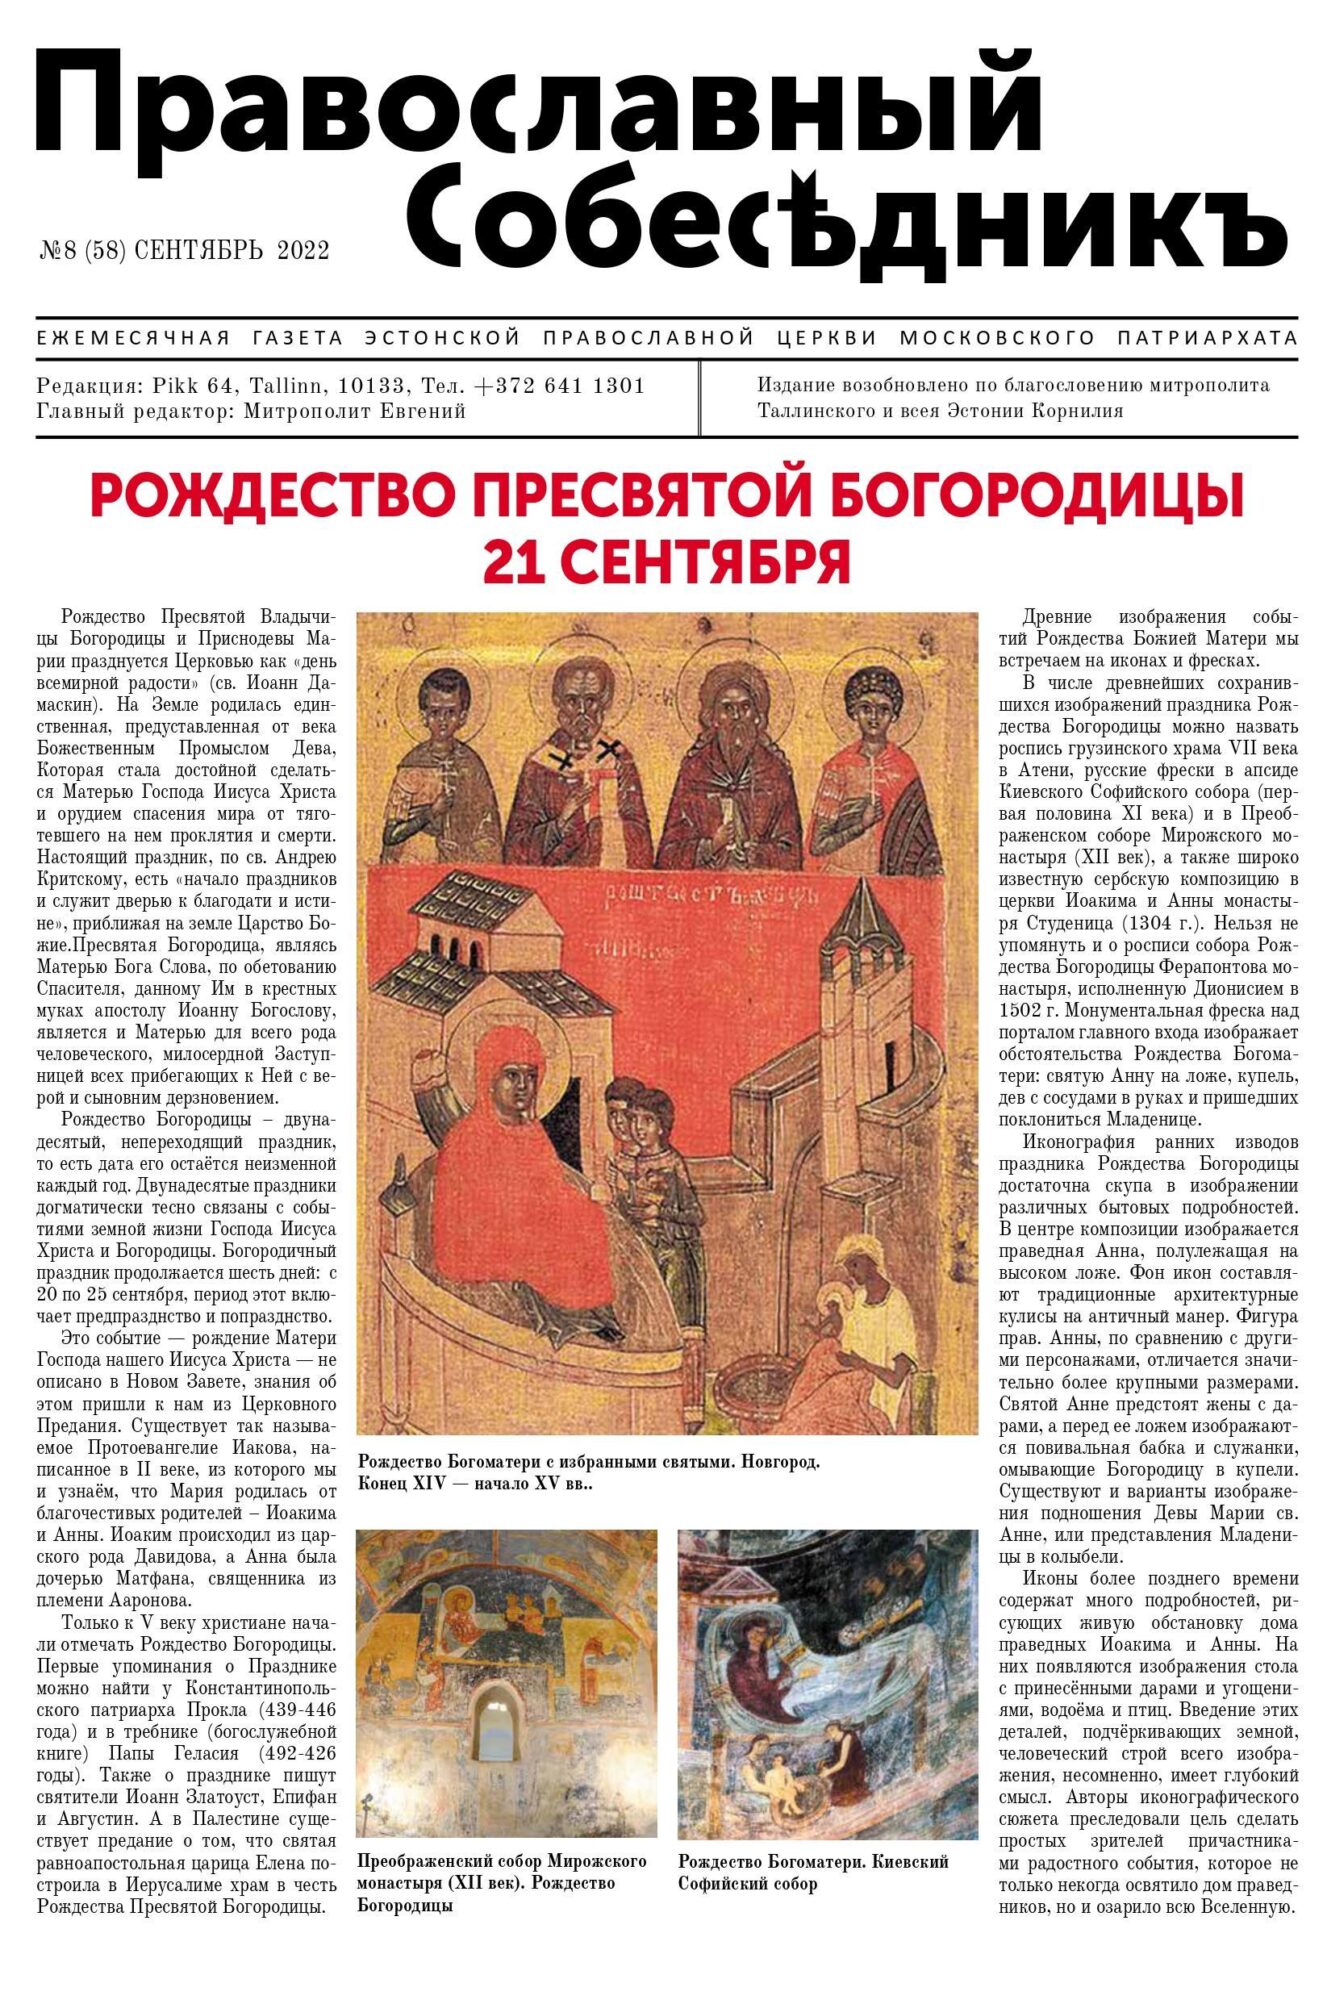 Православный Собеседник, сентябрь 2022. Обложка